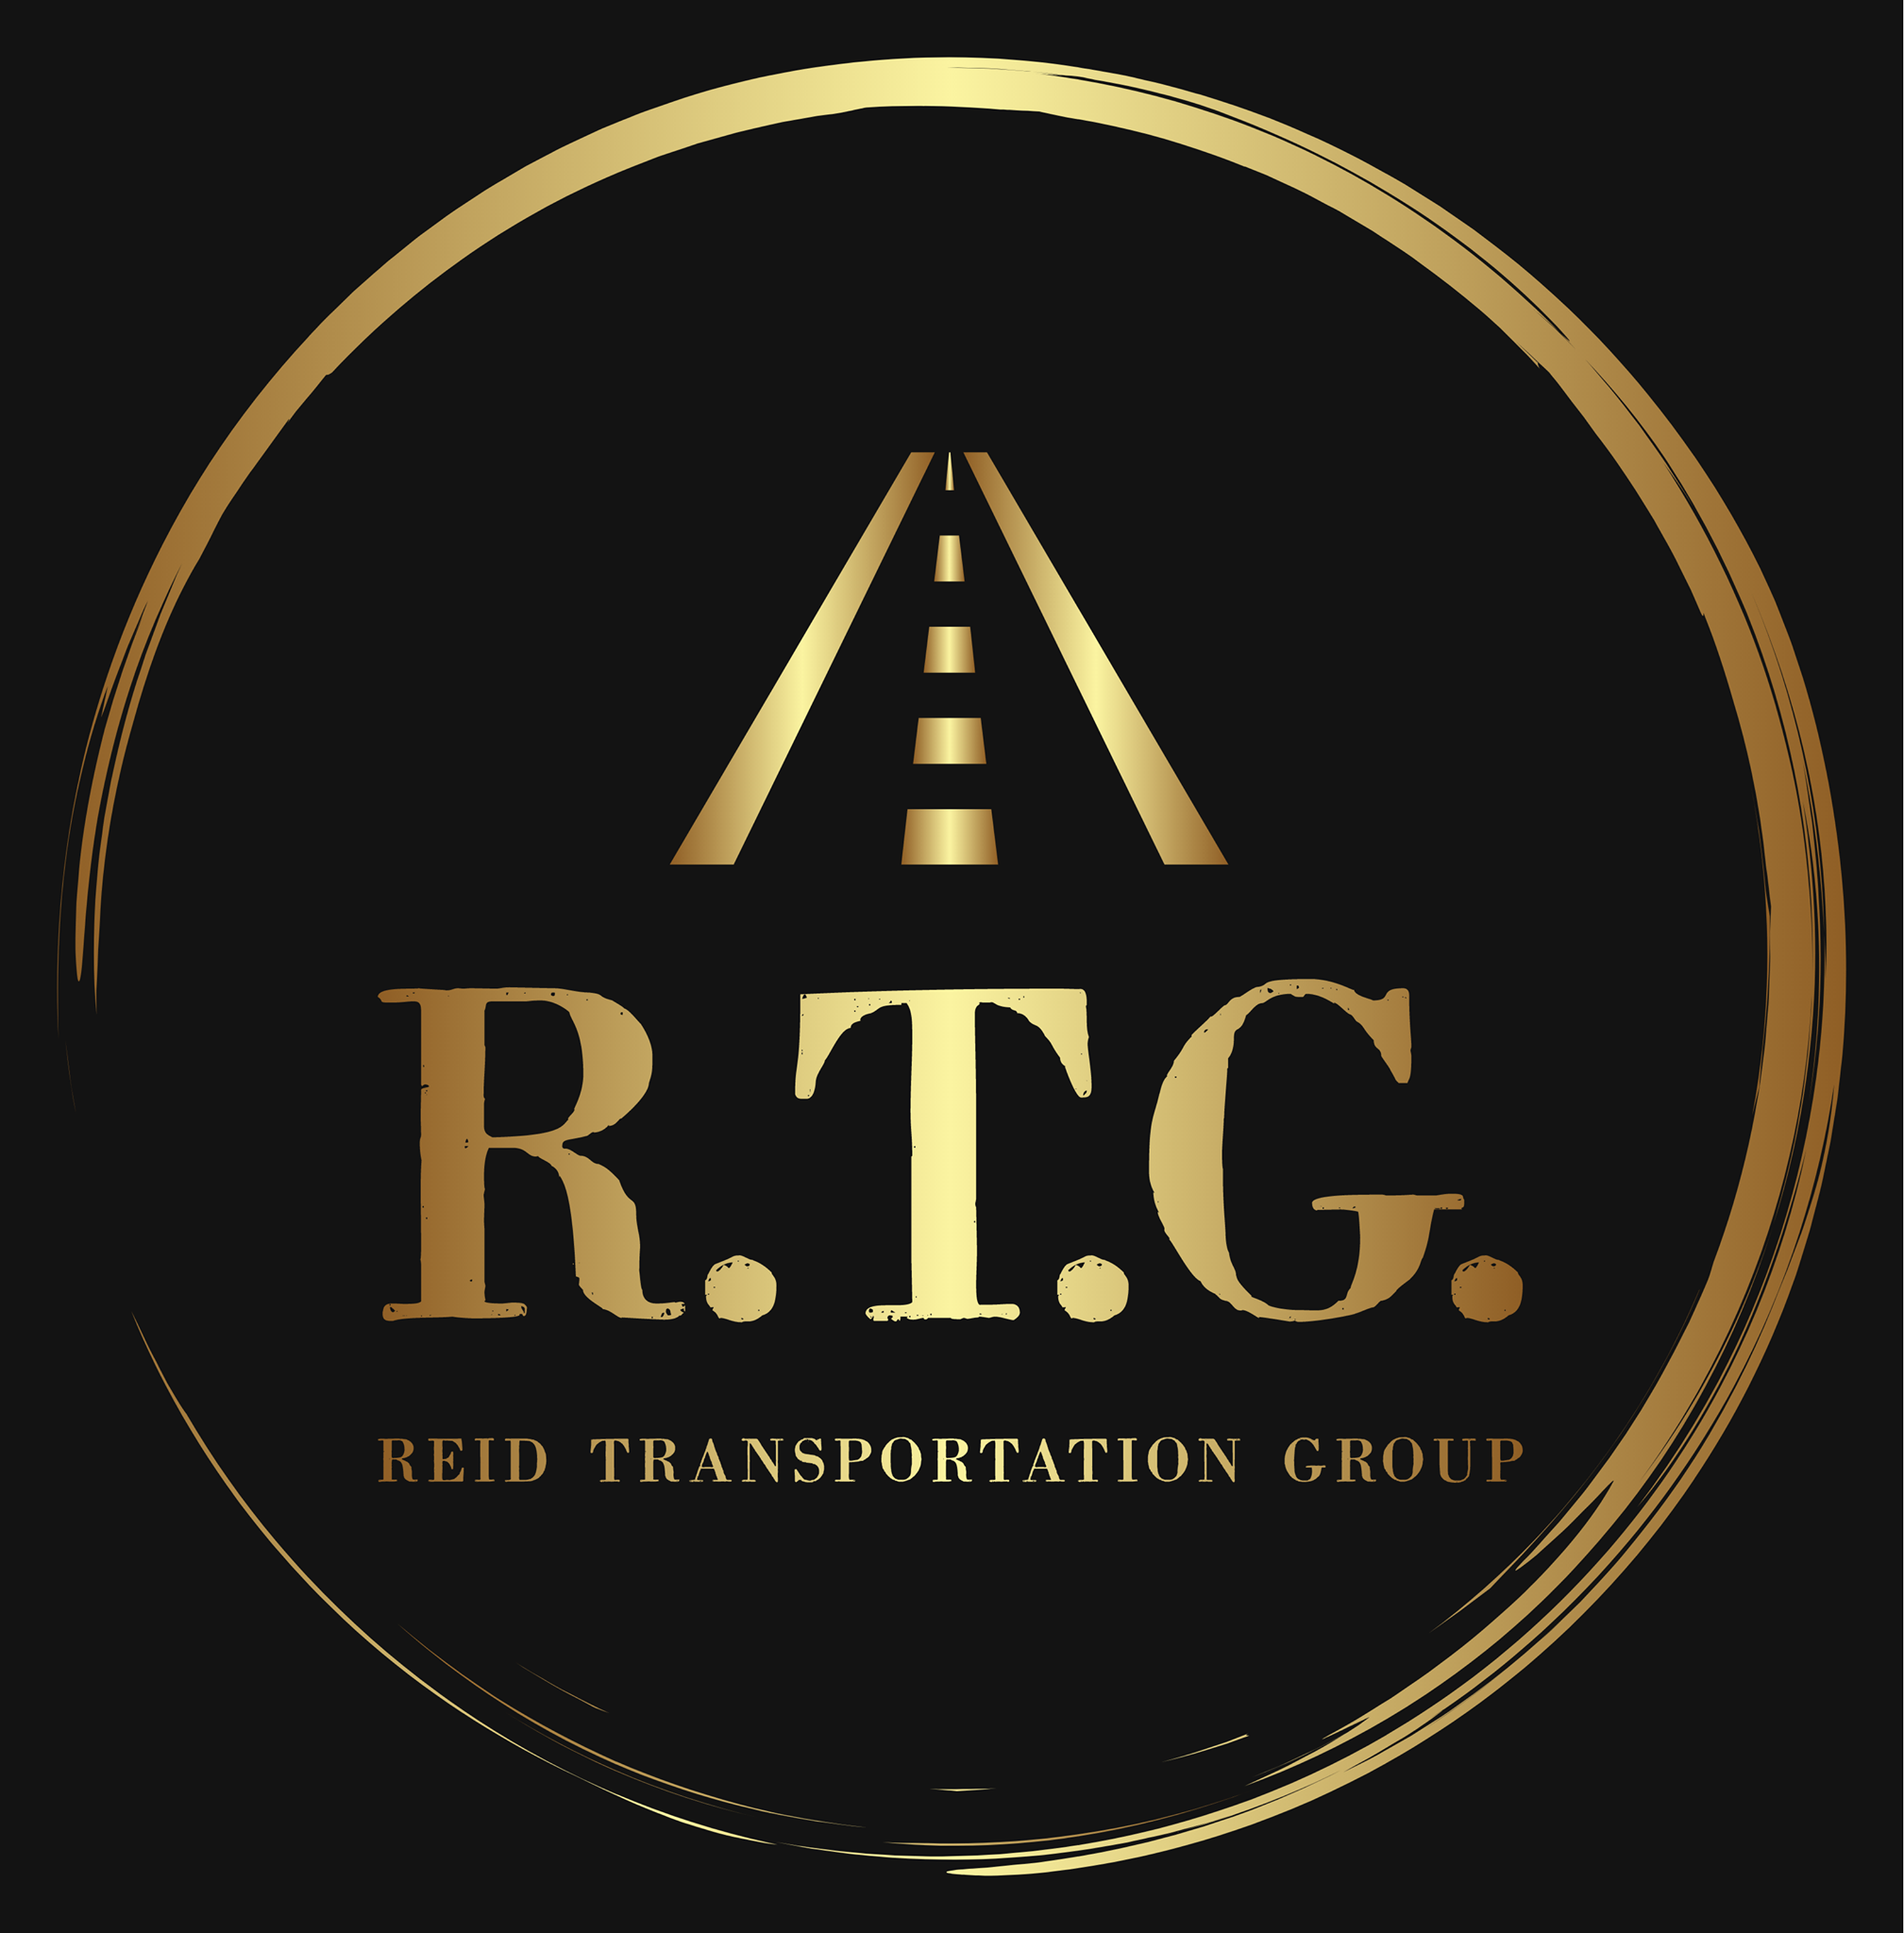  Best Logistics Transportation services in Jacksonville, FL